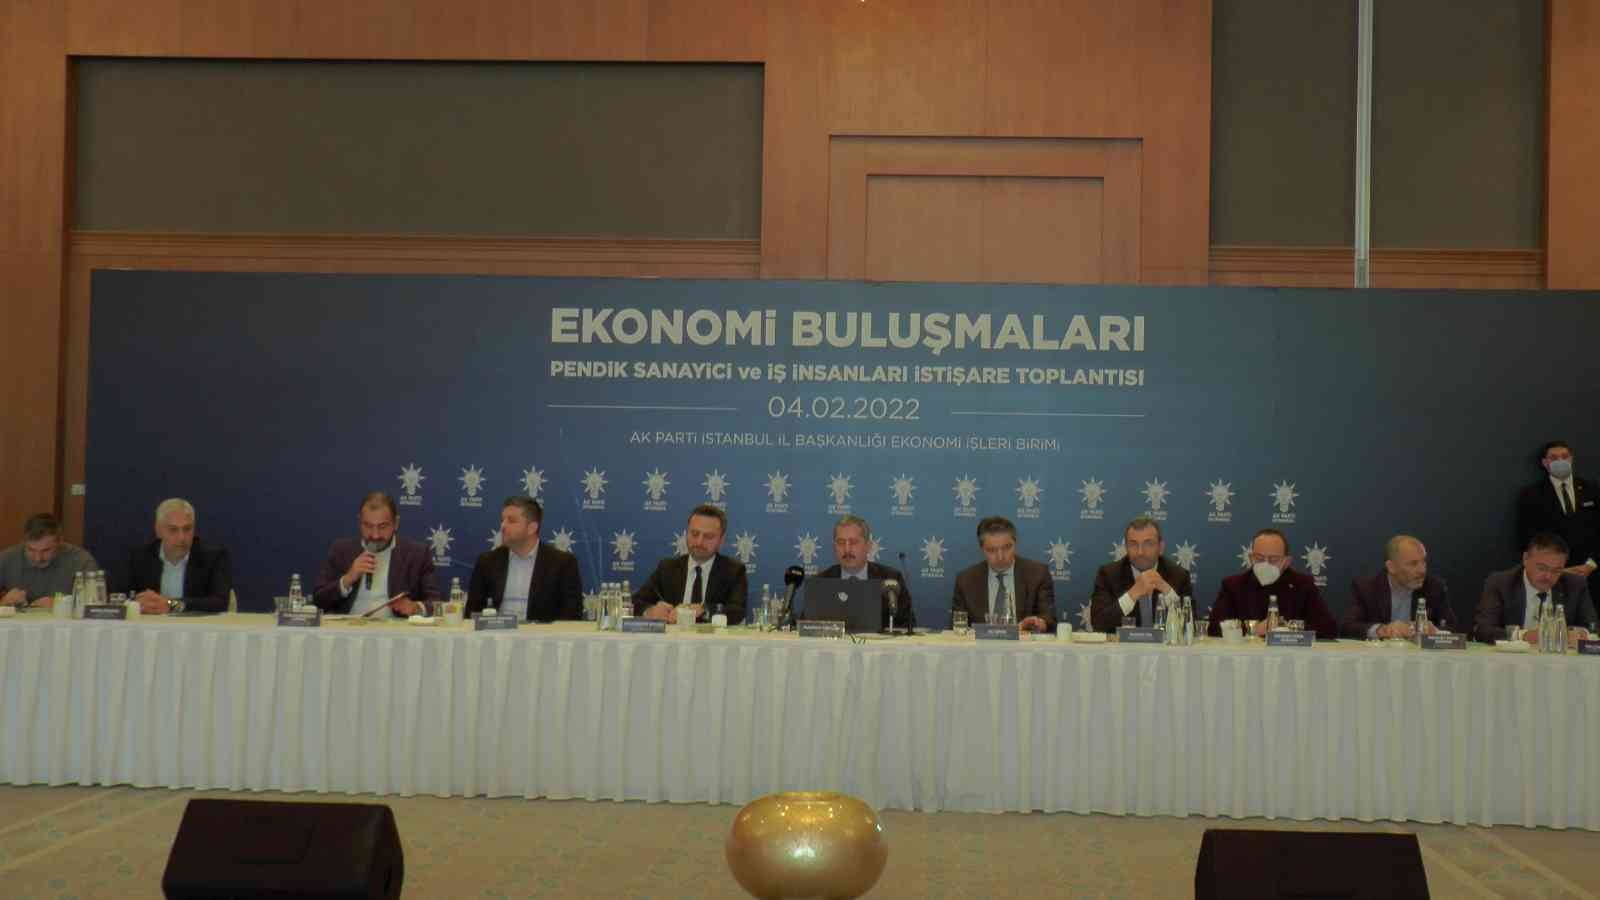 Bakan Yardımcısı Mahmut Gürcan: “2020-2021 arasında dünya ekonomisi yüzde 3.1 oranında küçülmüştür. Ancak Türkiye ekonomisi yüzde 1.8 büyüme kat etmiştir”